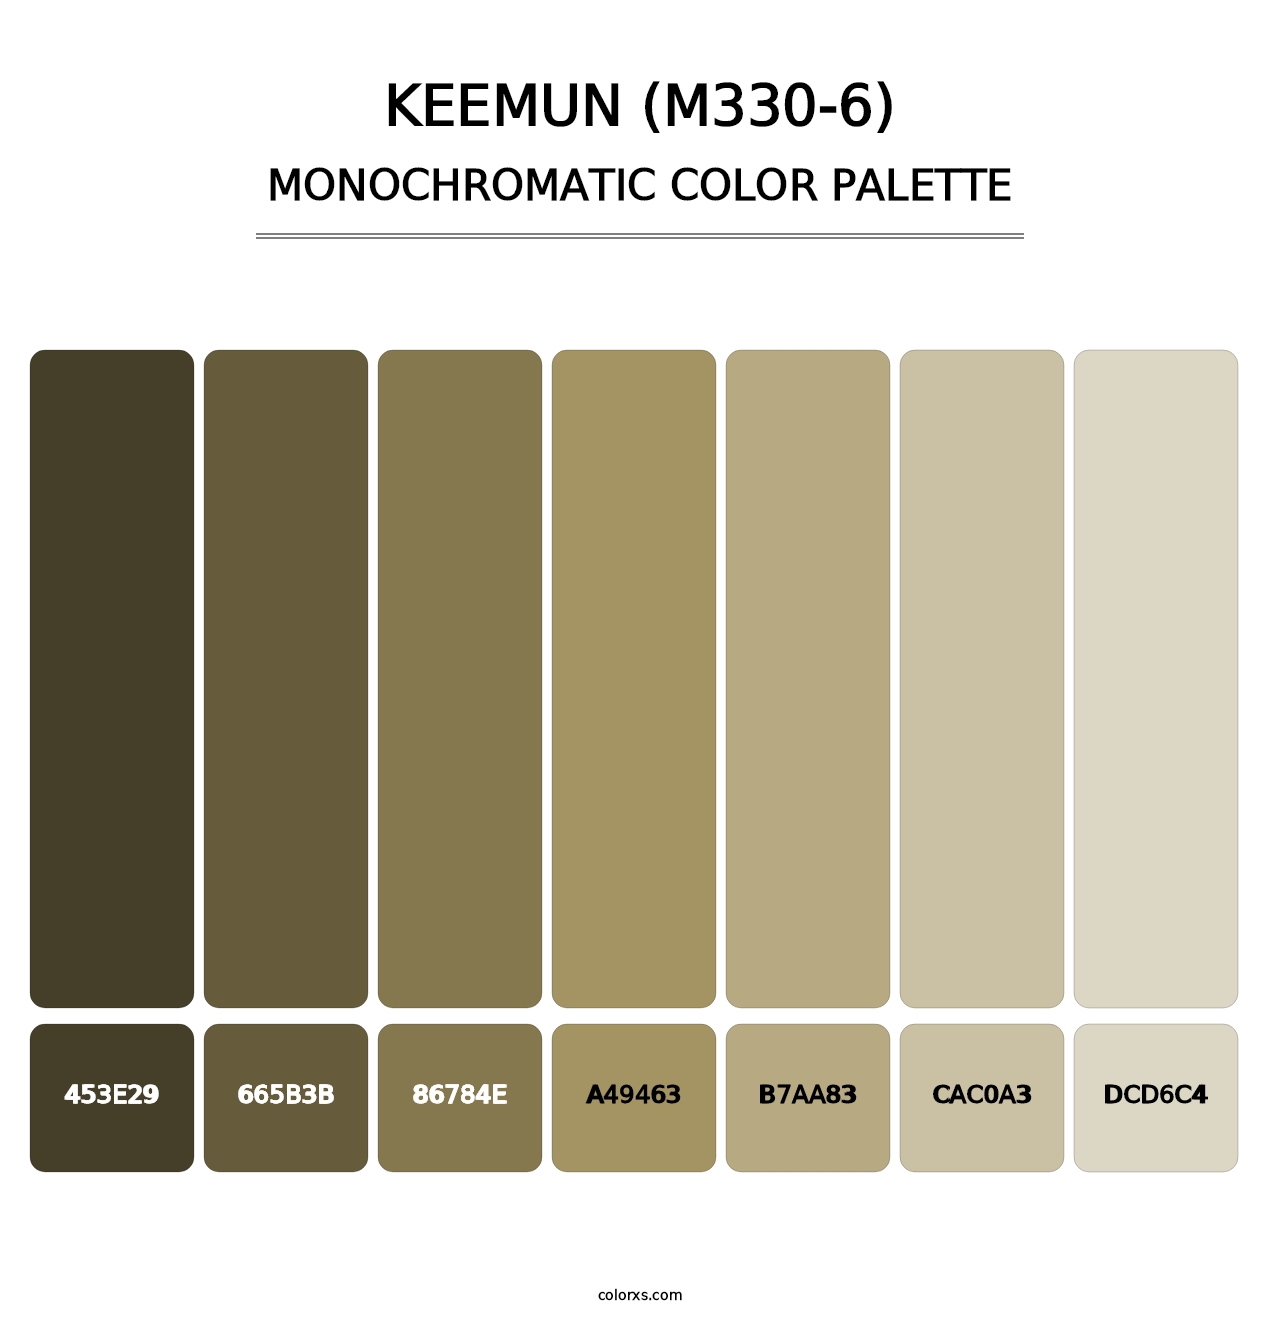 Keemun (M330-6) - Monochromatic Color Palette